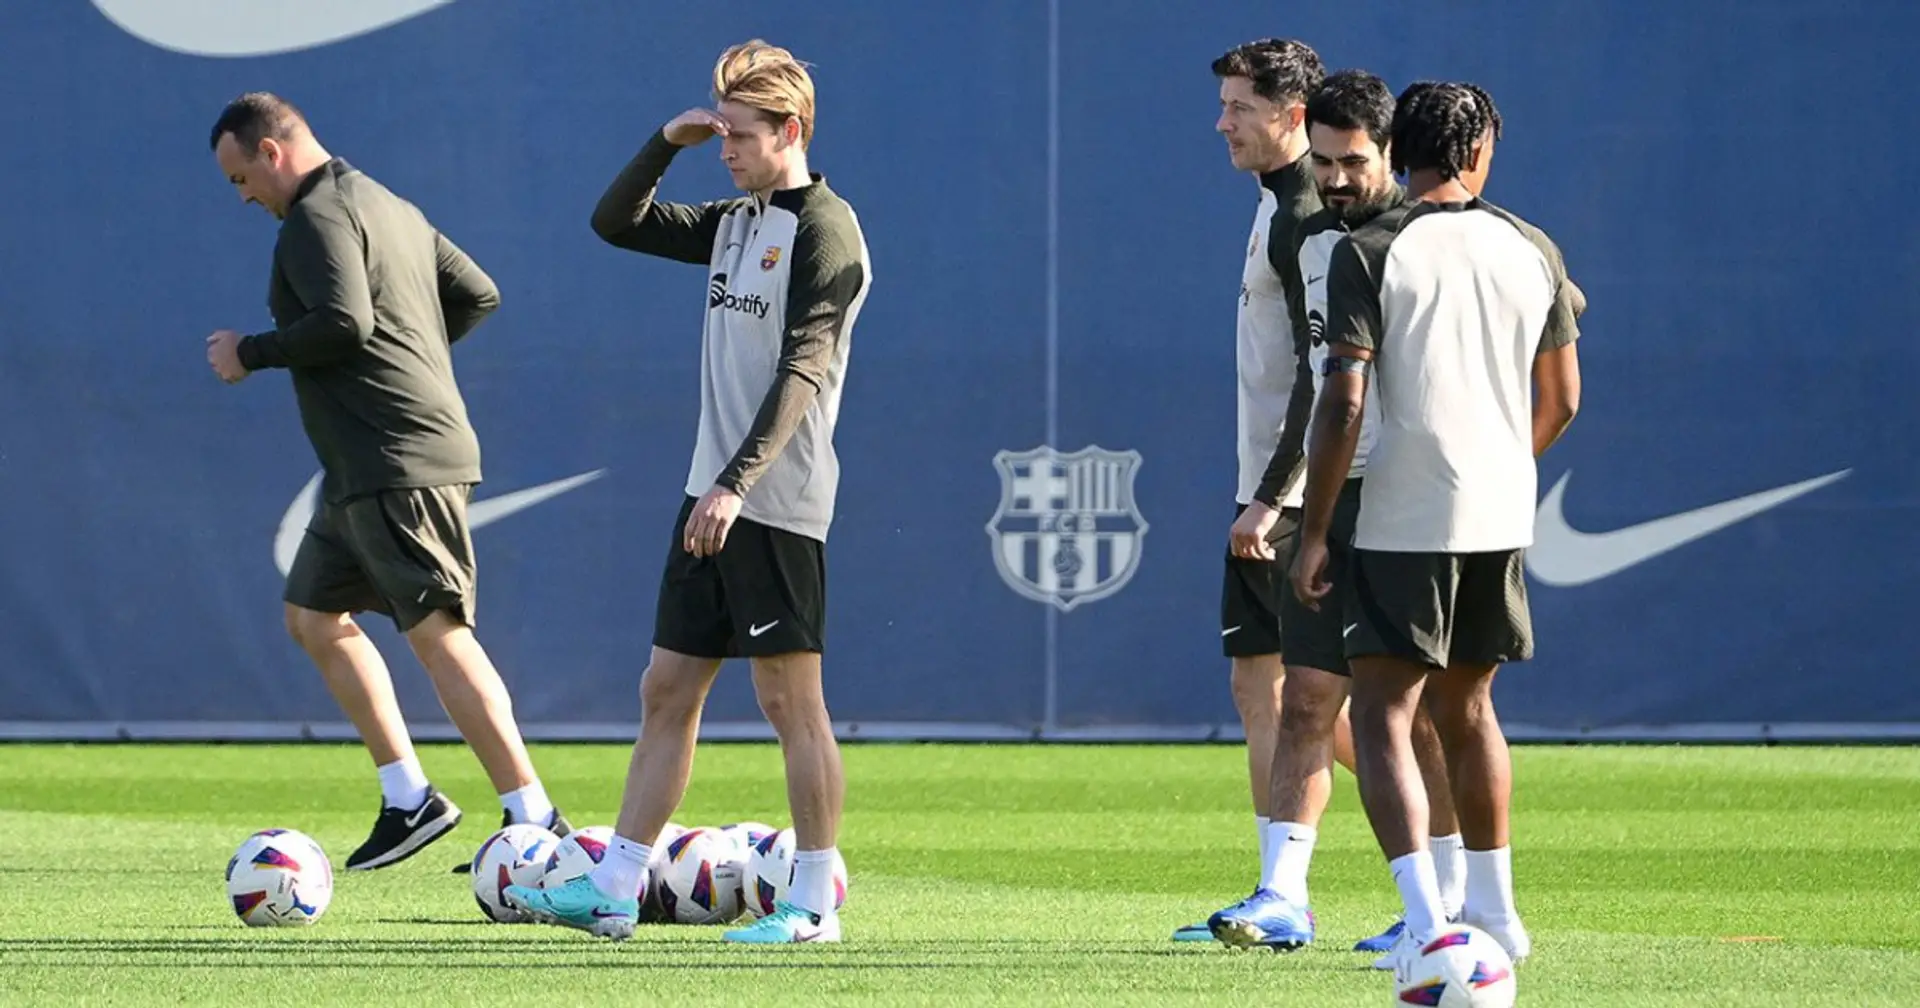 Big injury news at Barca